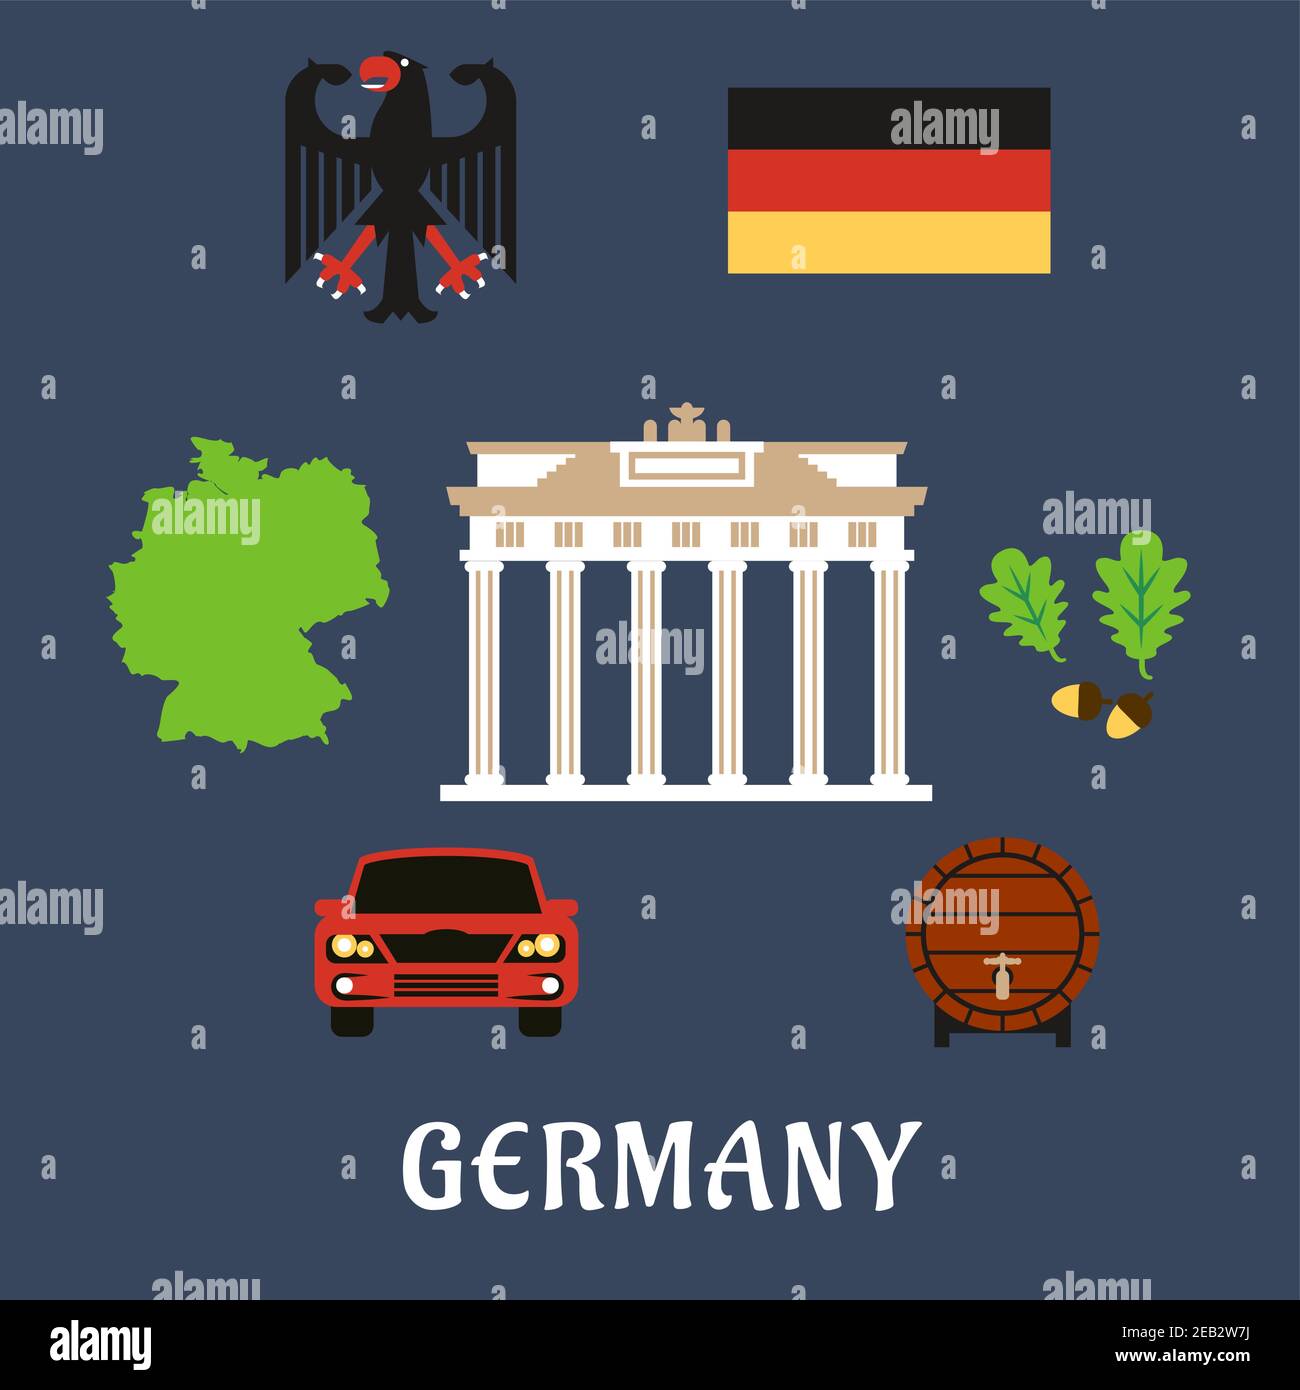 Brandenburg Flagge' Sticker